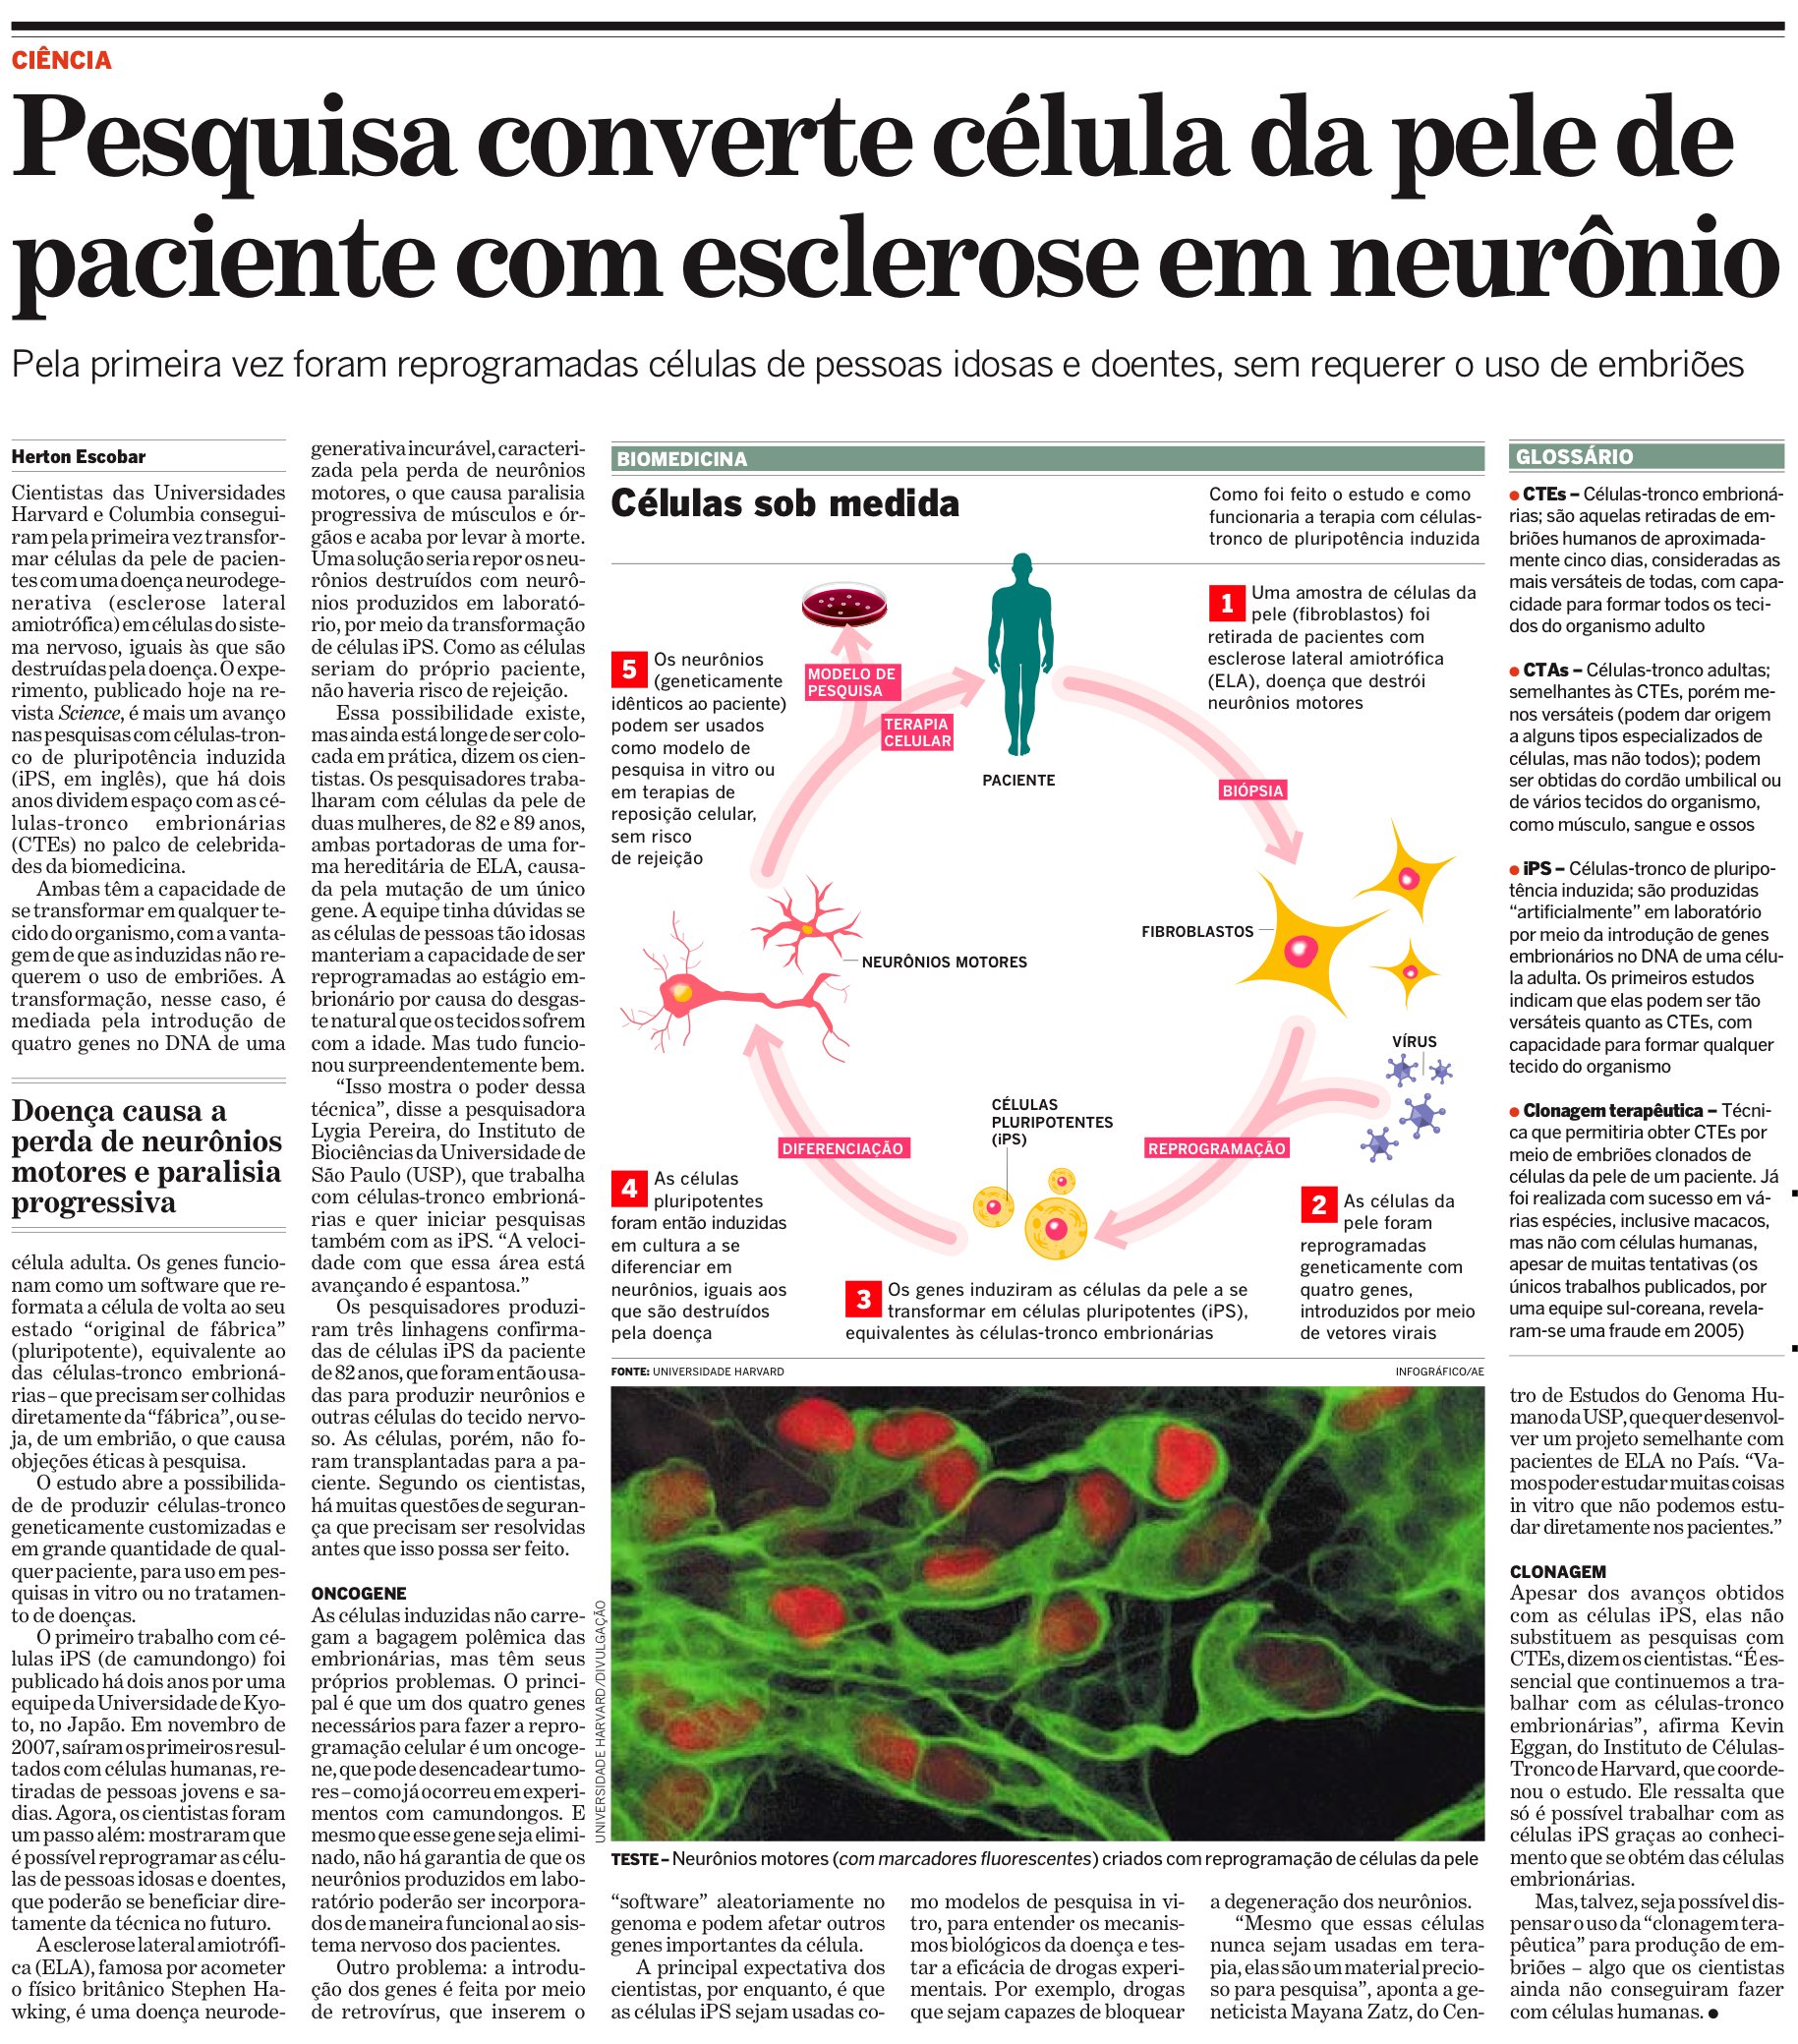 Célula da pele de paciente com esclerose vira neurônio